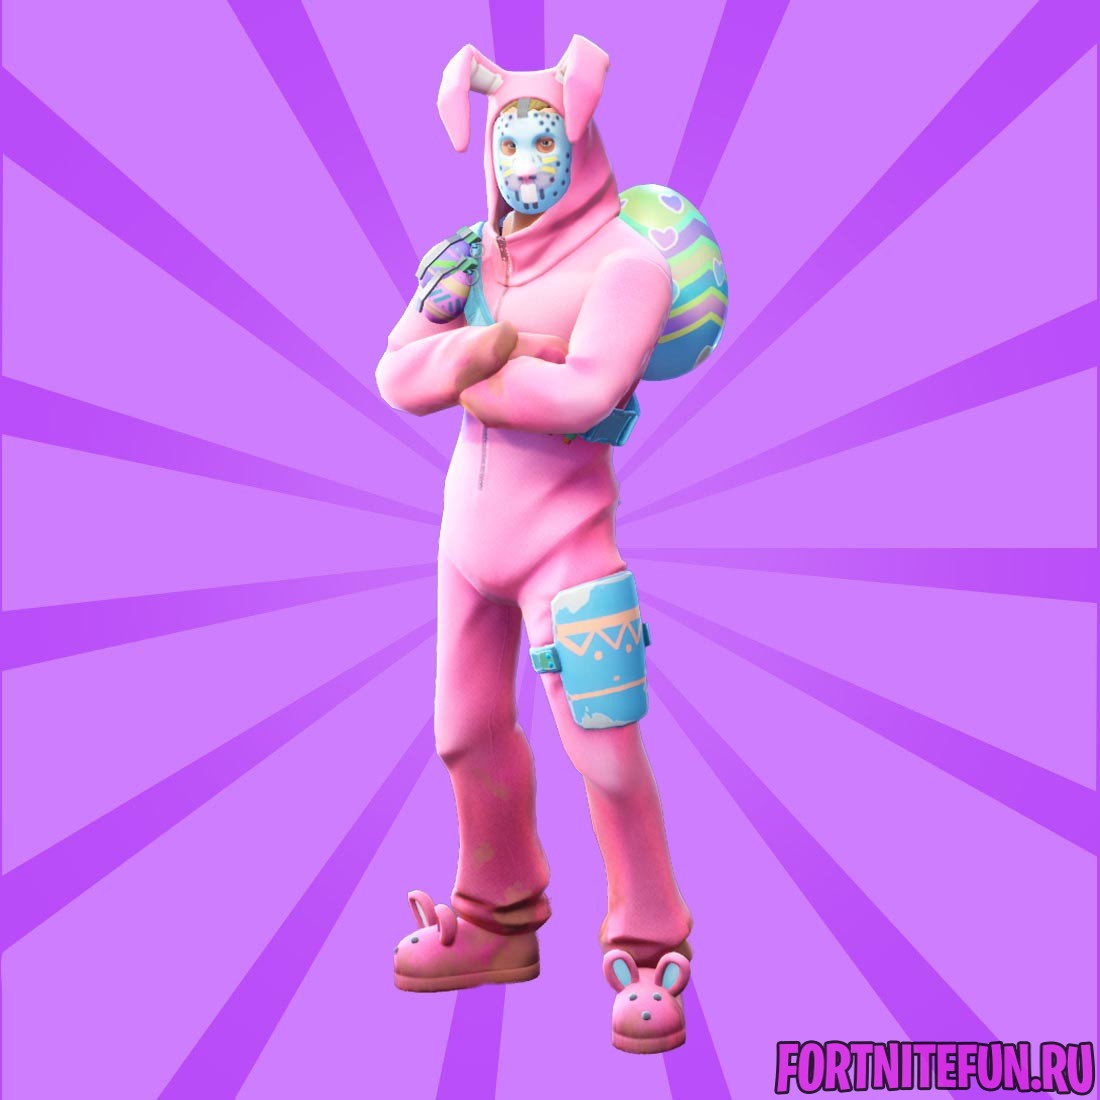 Rabbit Raider носит розовый тематический костюм кролика, на его капюшоне кр...